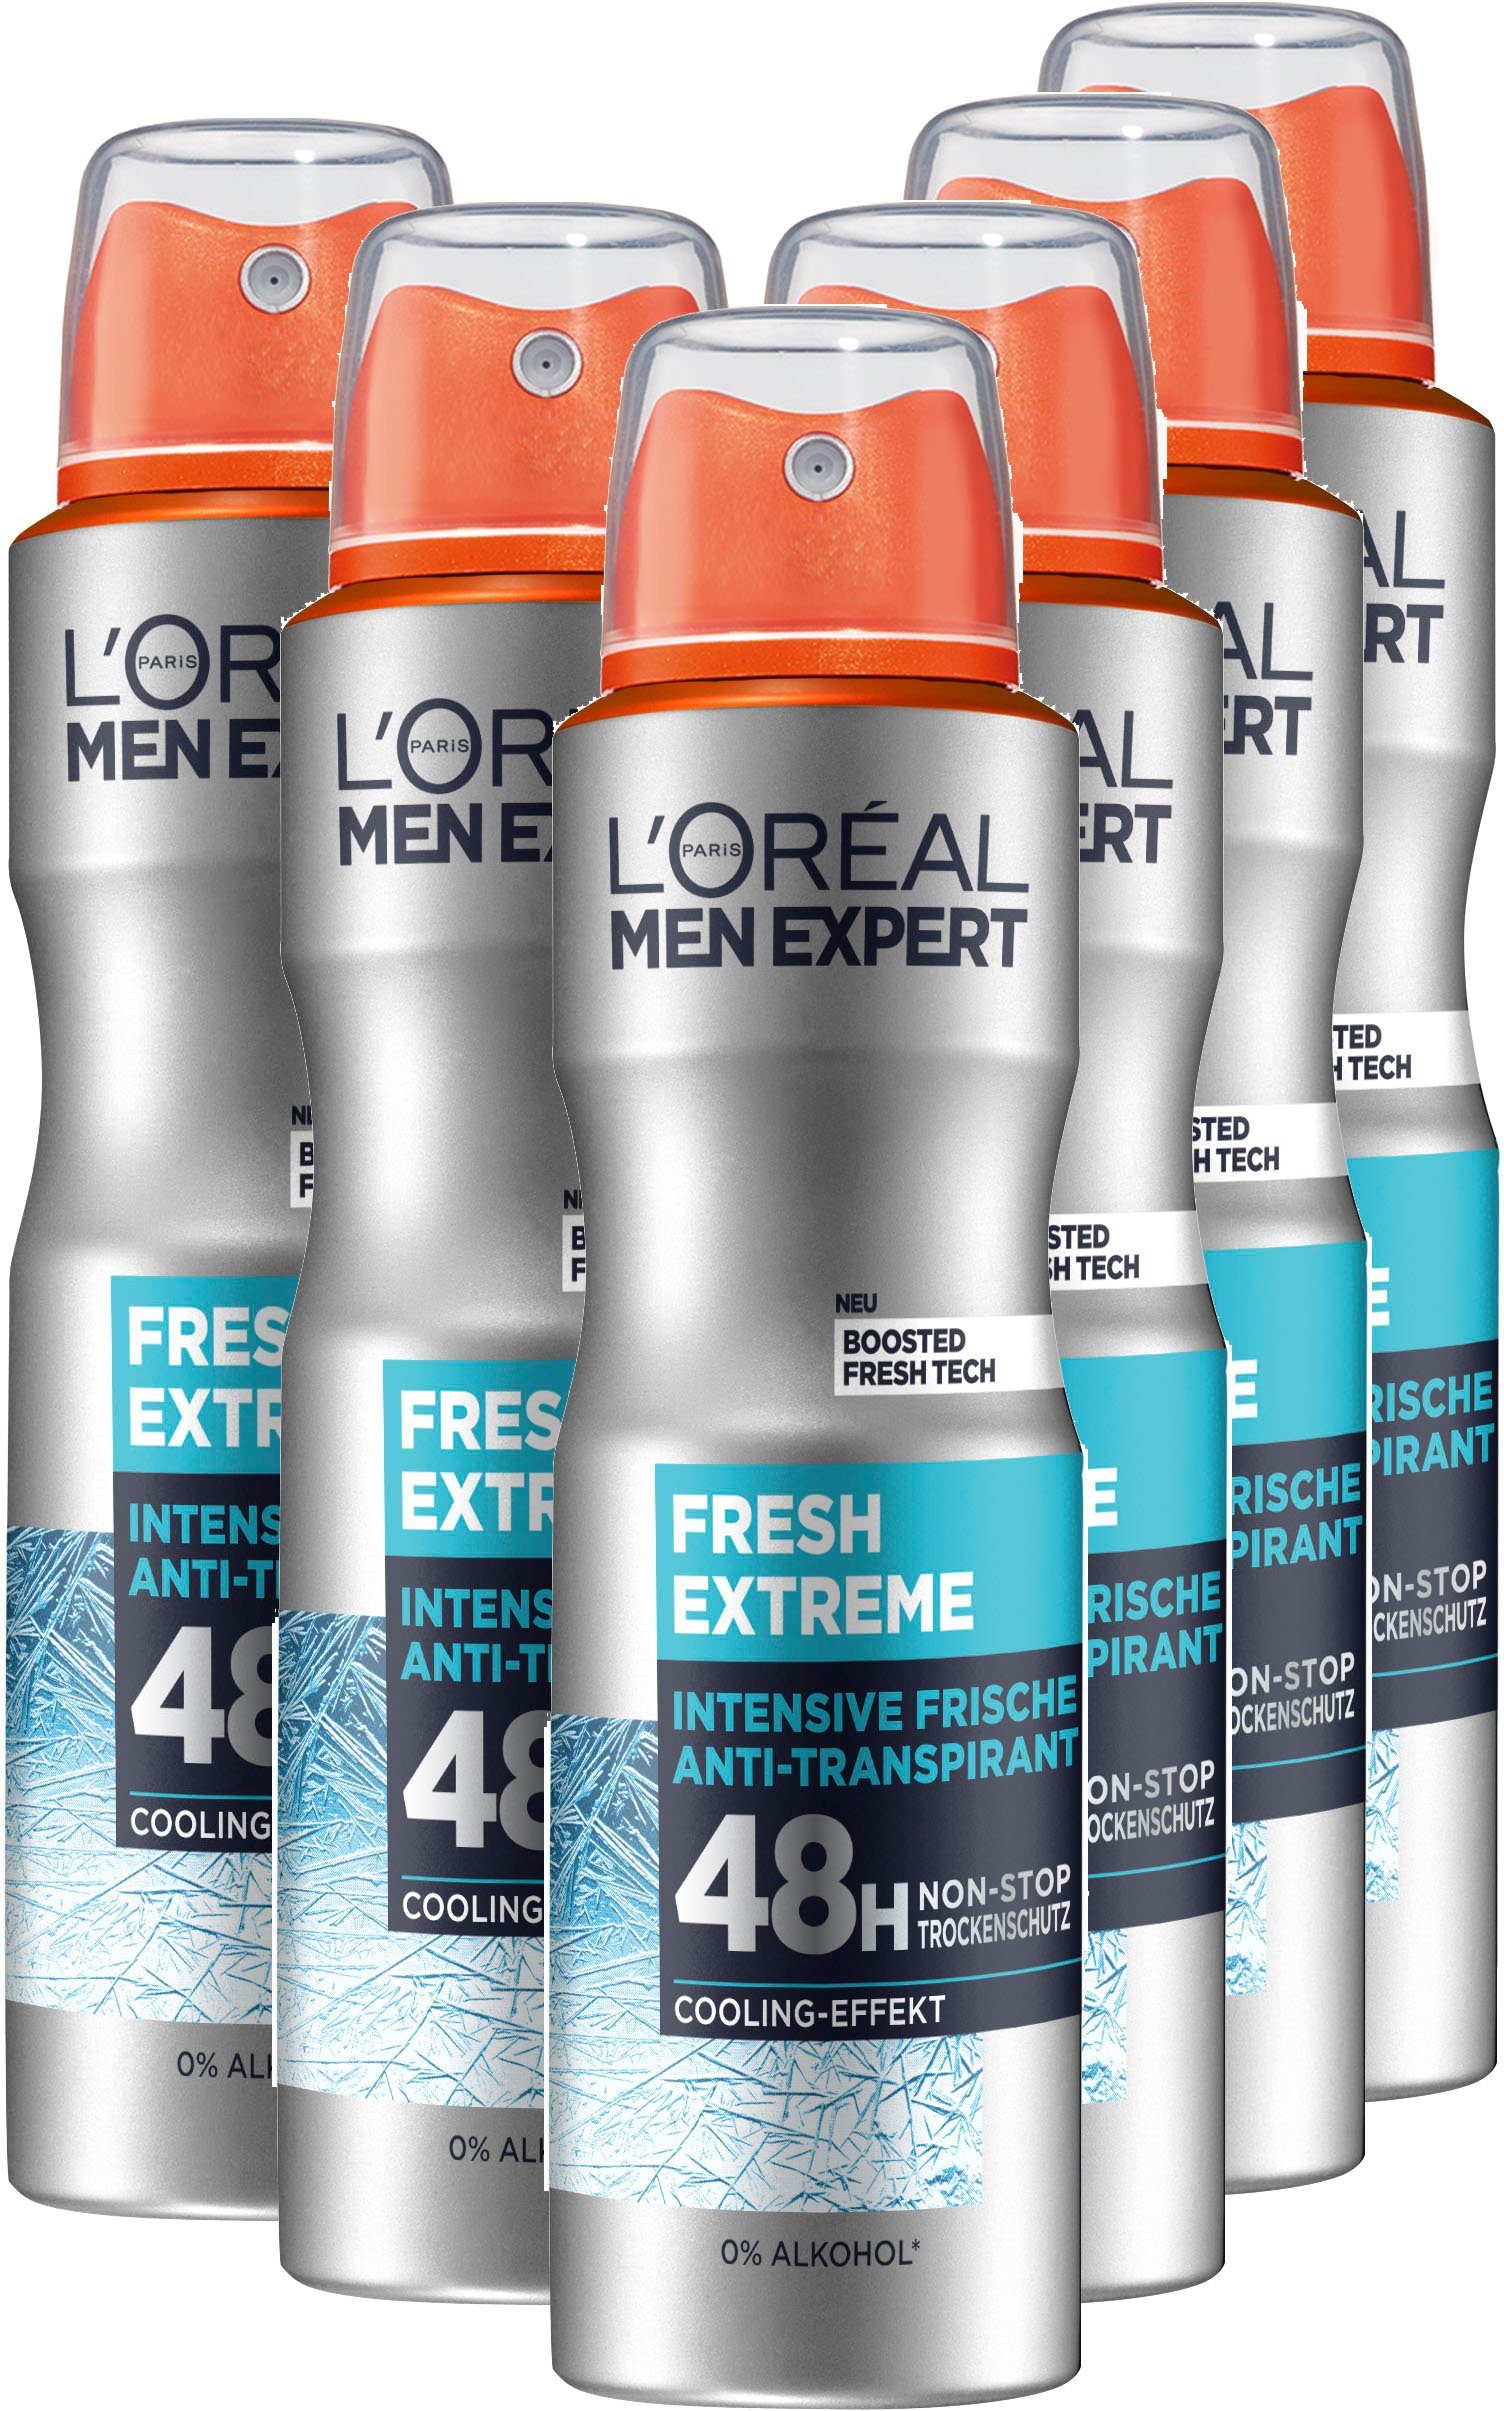 L'ORÉAL PARIS MEN 6-tlg. Deo Packung, Deo-Spray Extreme, Fresh Spray EXPERT